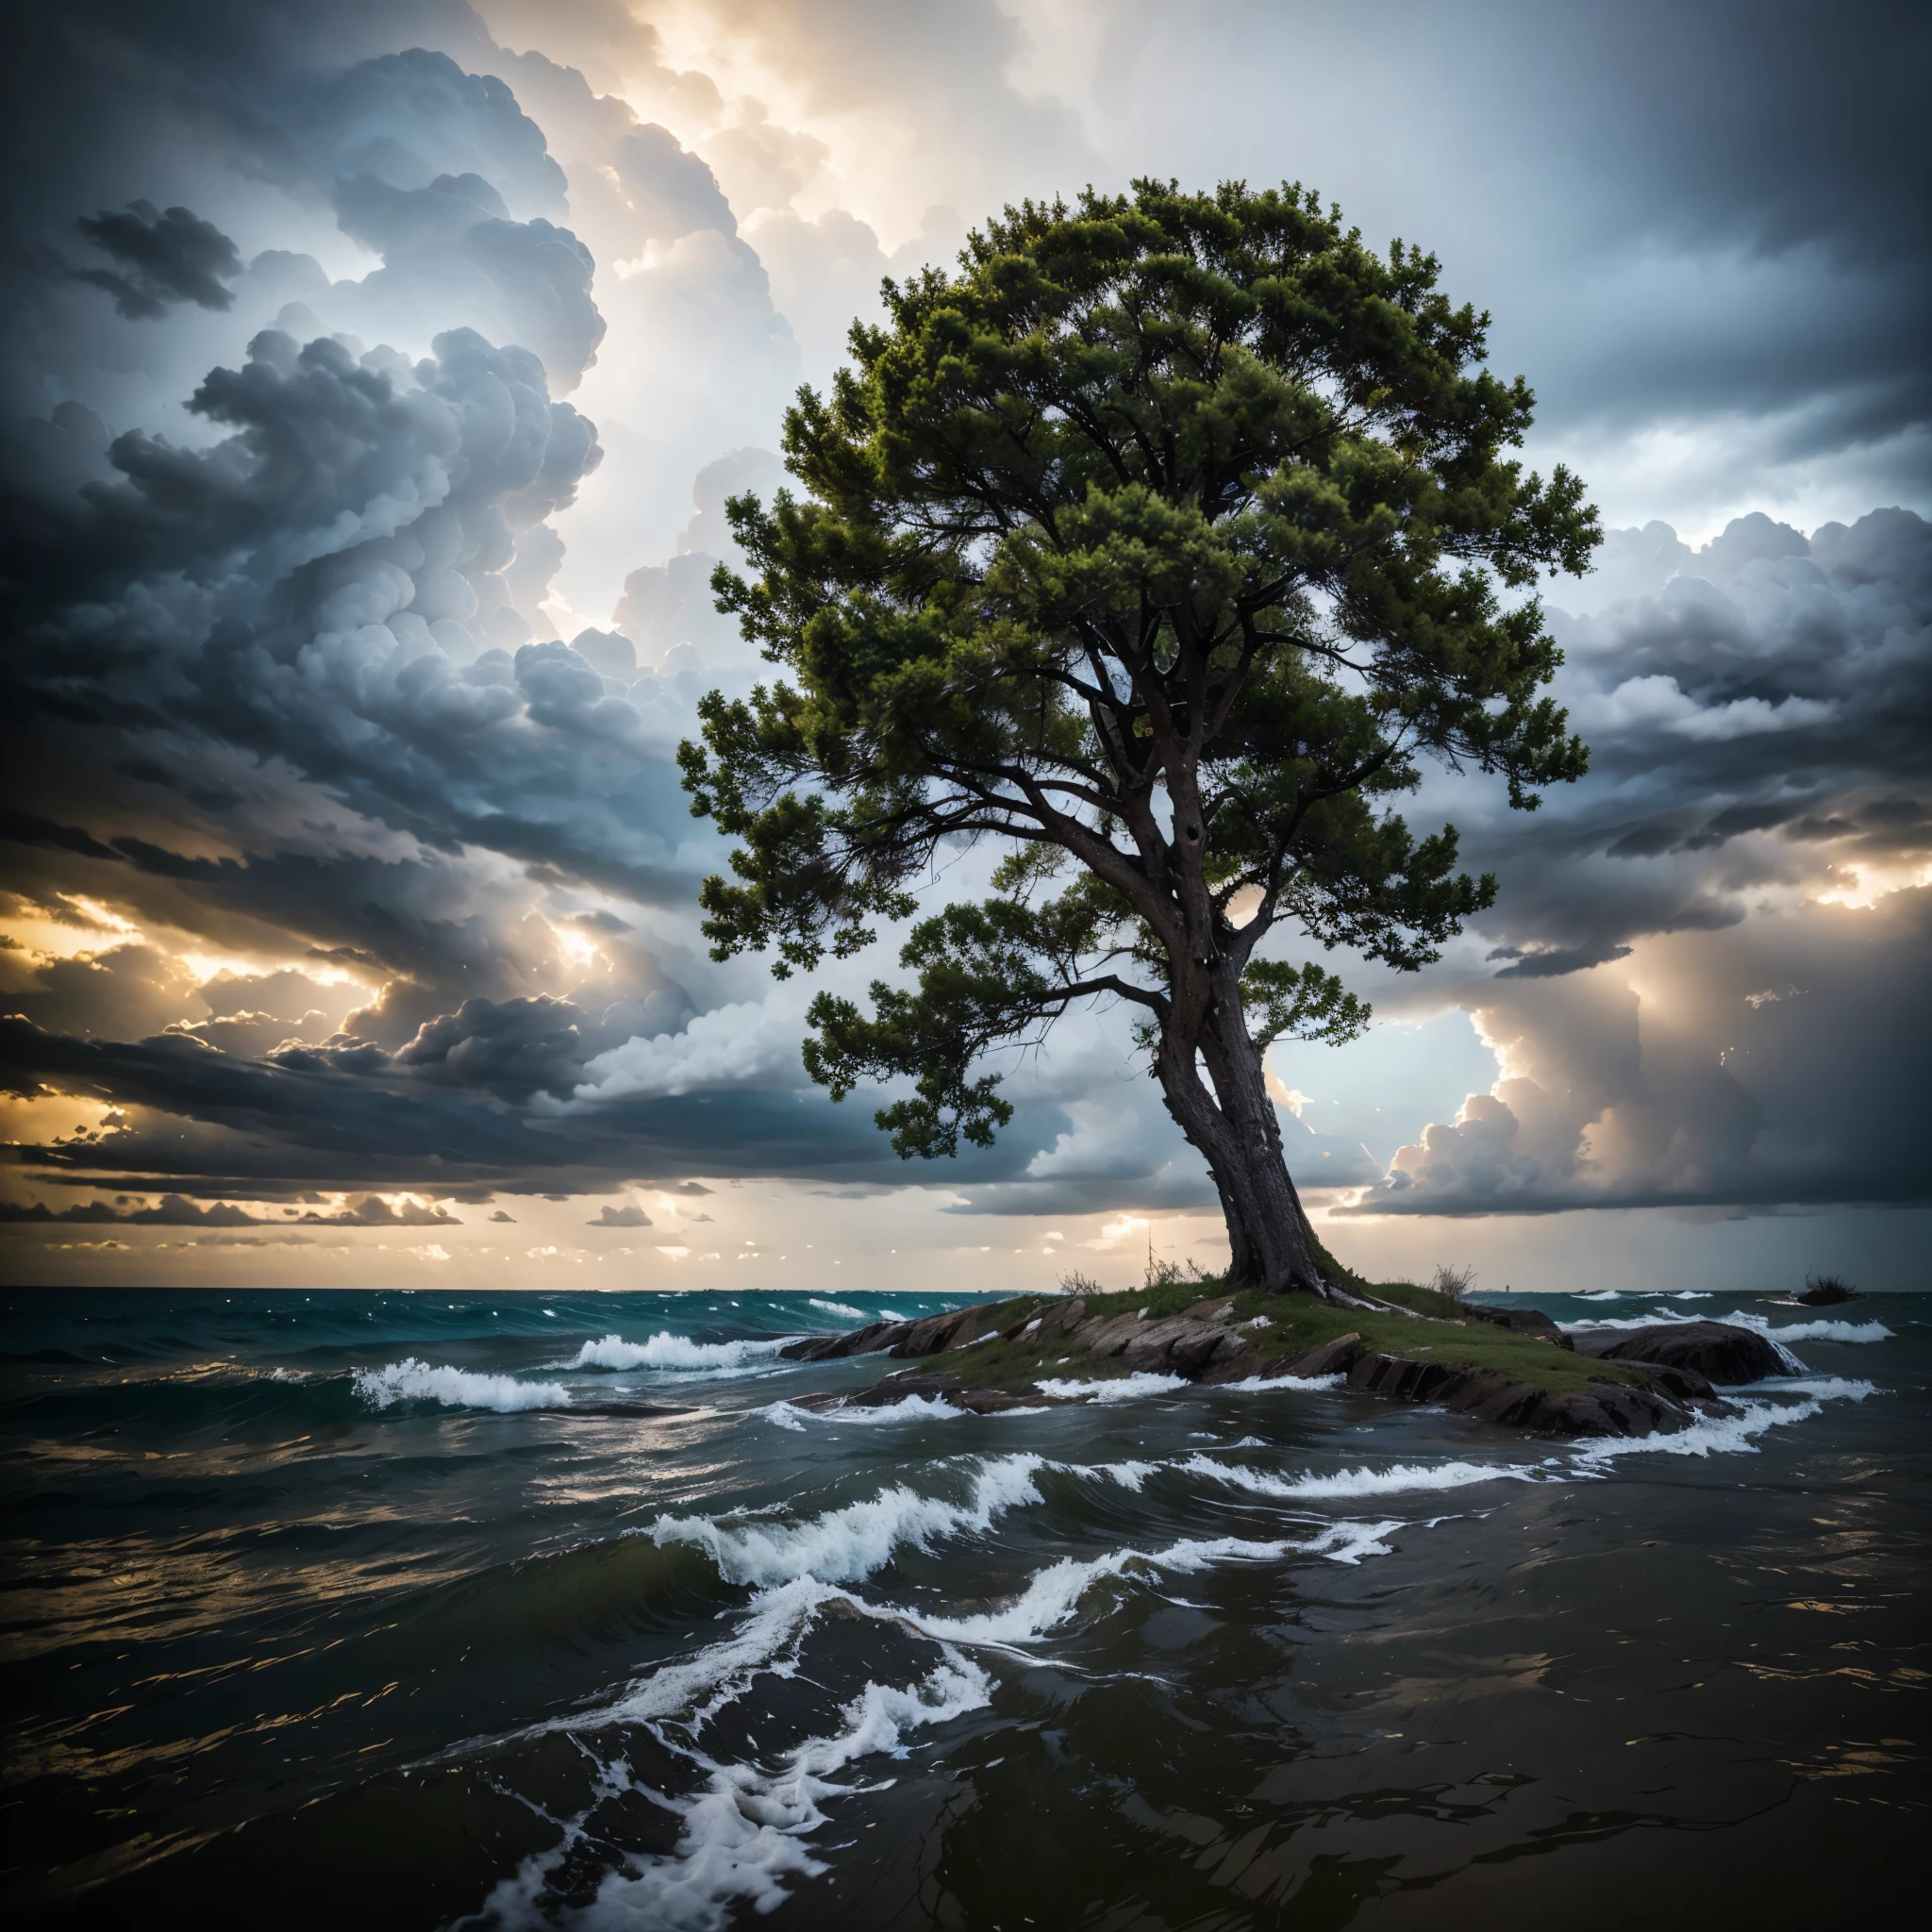 Uma árvore resiliente em meio às tempestades, destacando a resiliência que cresce a partir dos desafios.